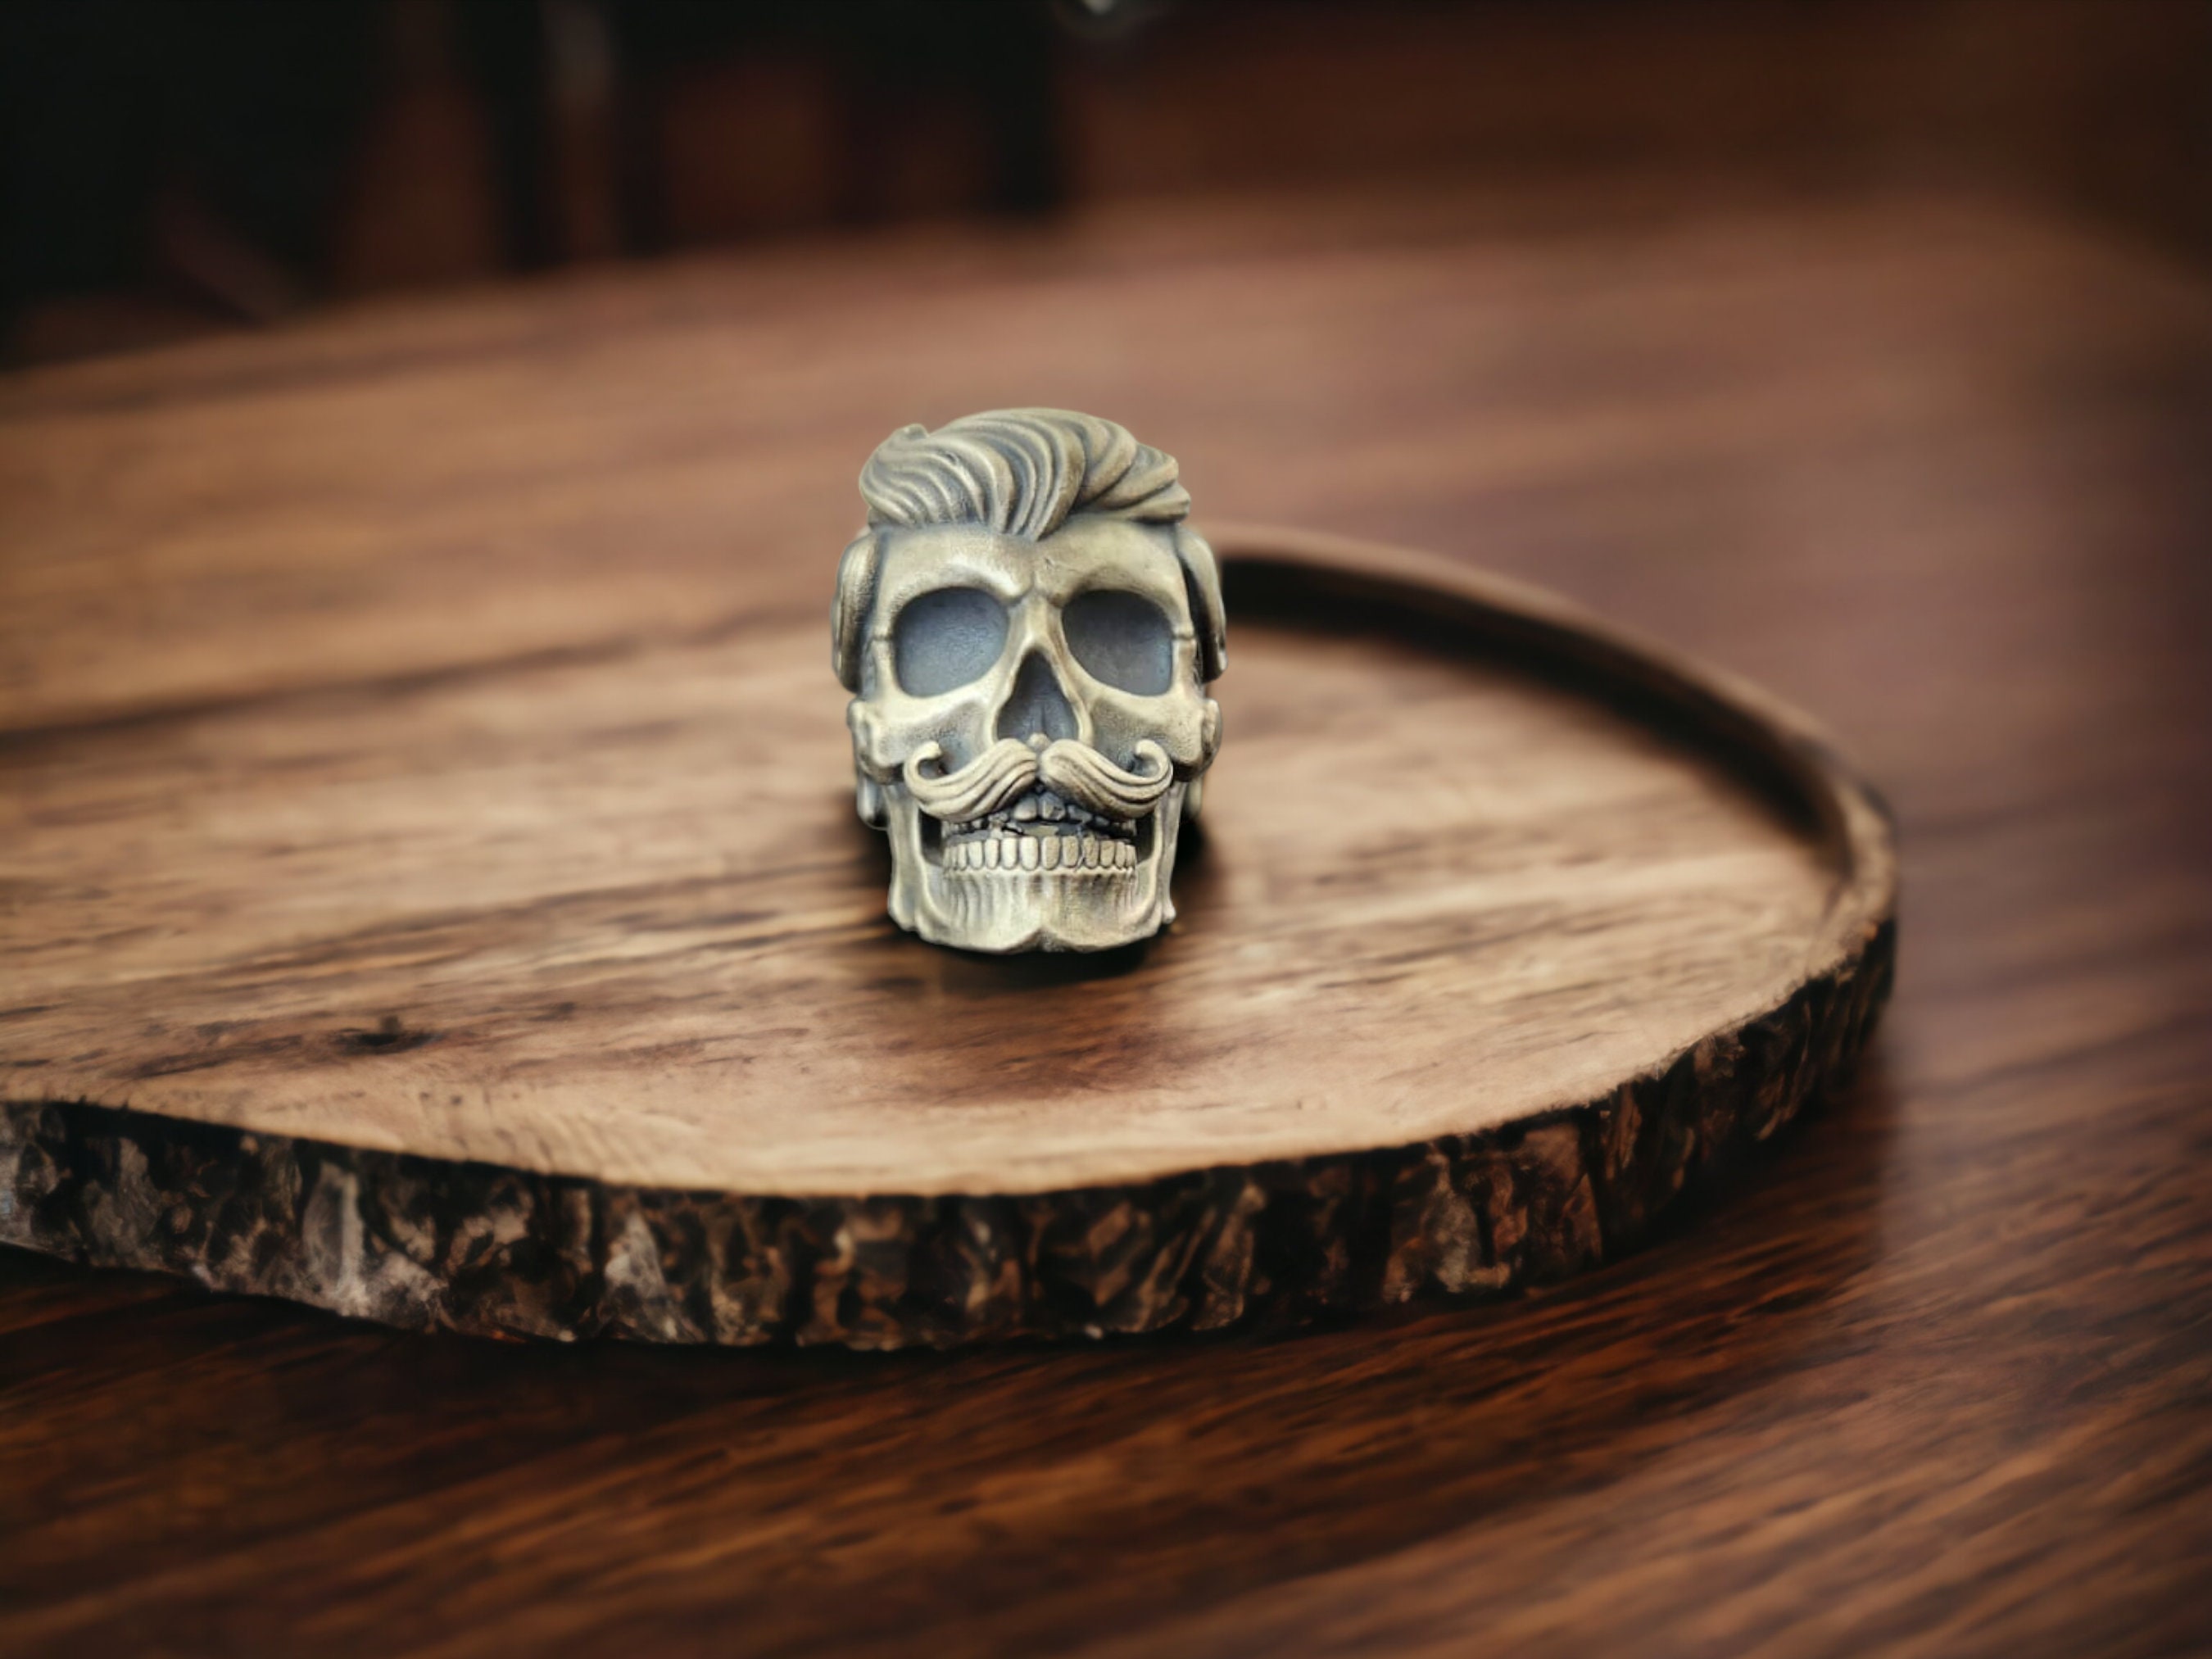 3D Skull Ring for Men, Vintage Skull Ring, Gothic Skull Ring, Cool 